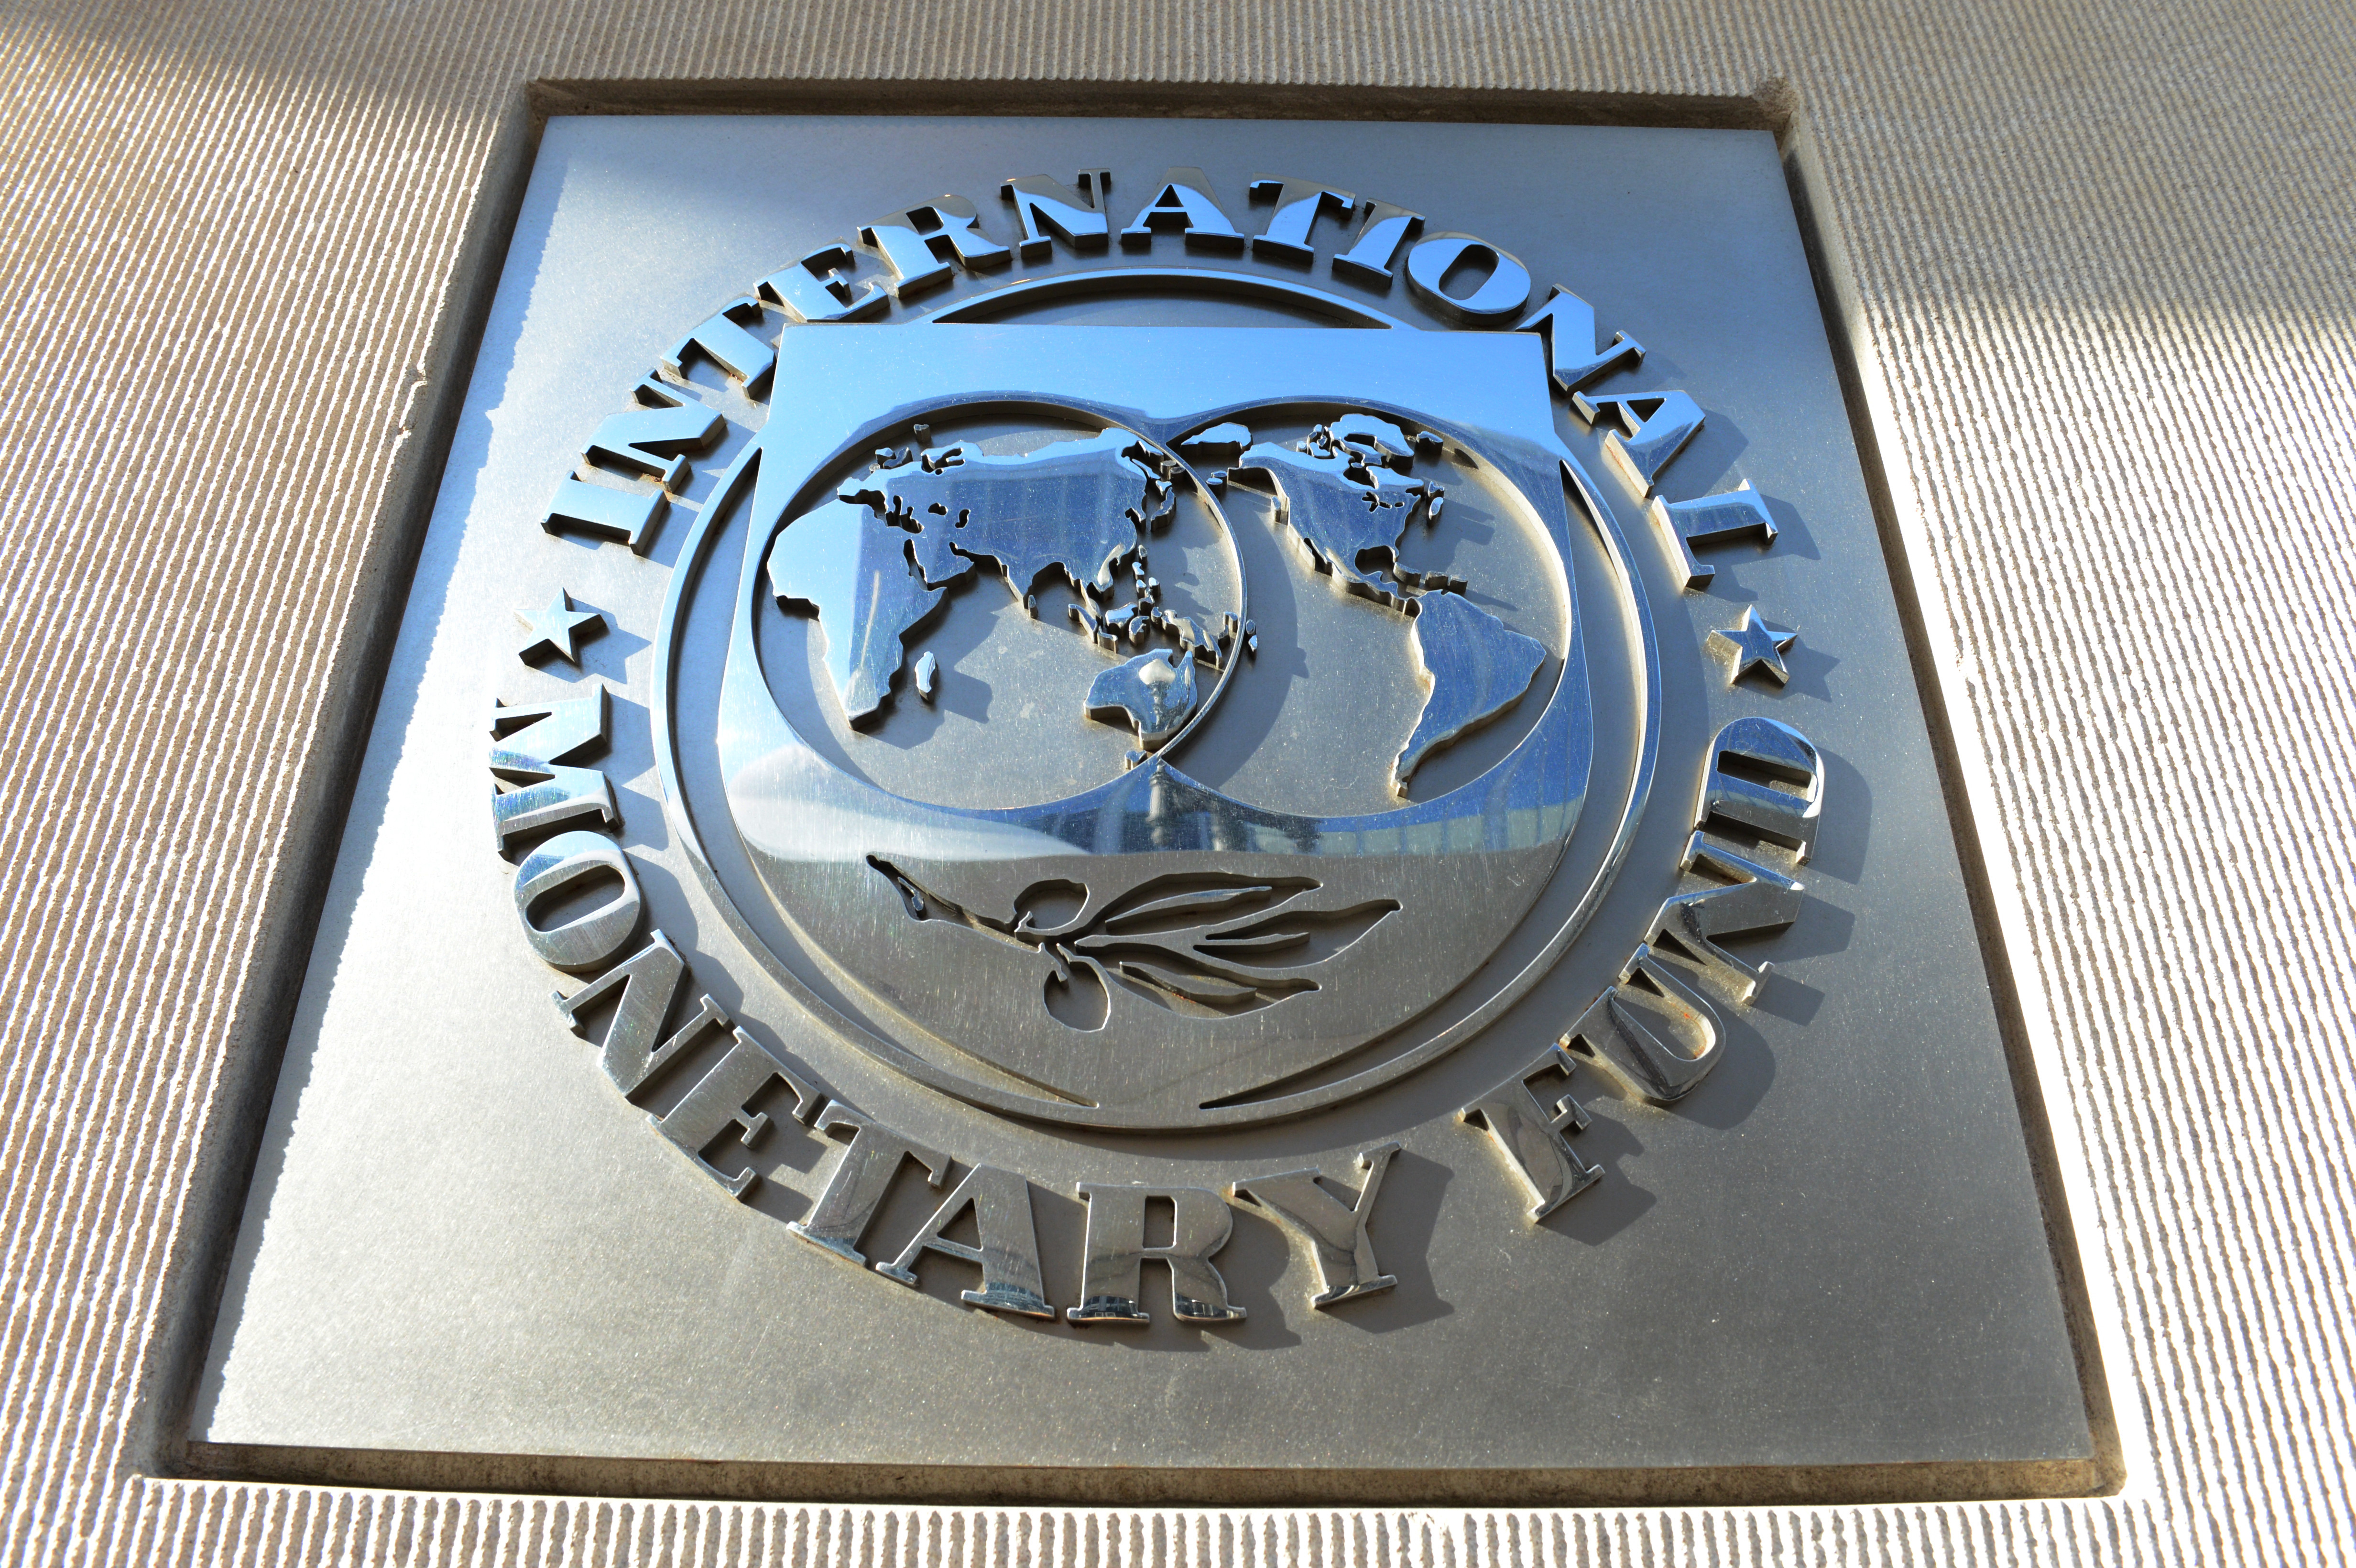 Сайт мвф. Международный валютный фонд (МВФ). МВФ Вашингтон. Герб МВФ. Символ МВФ.